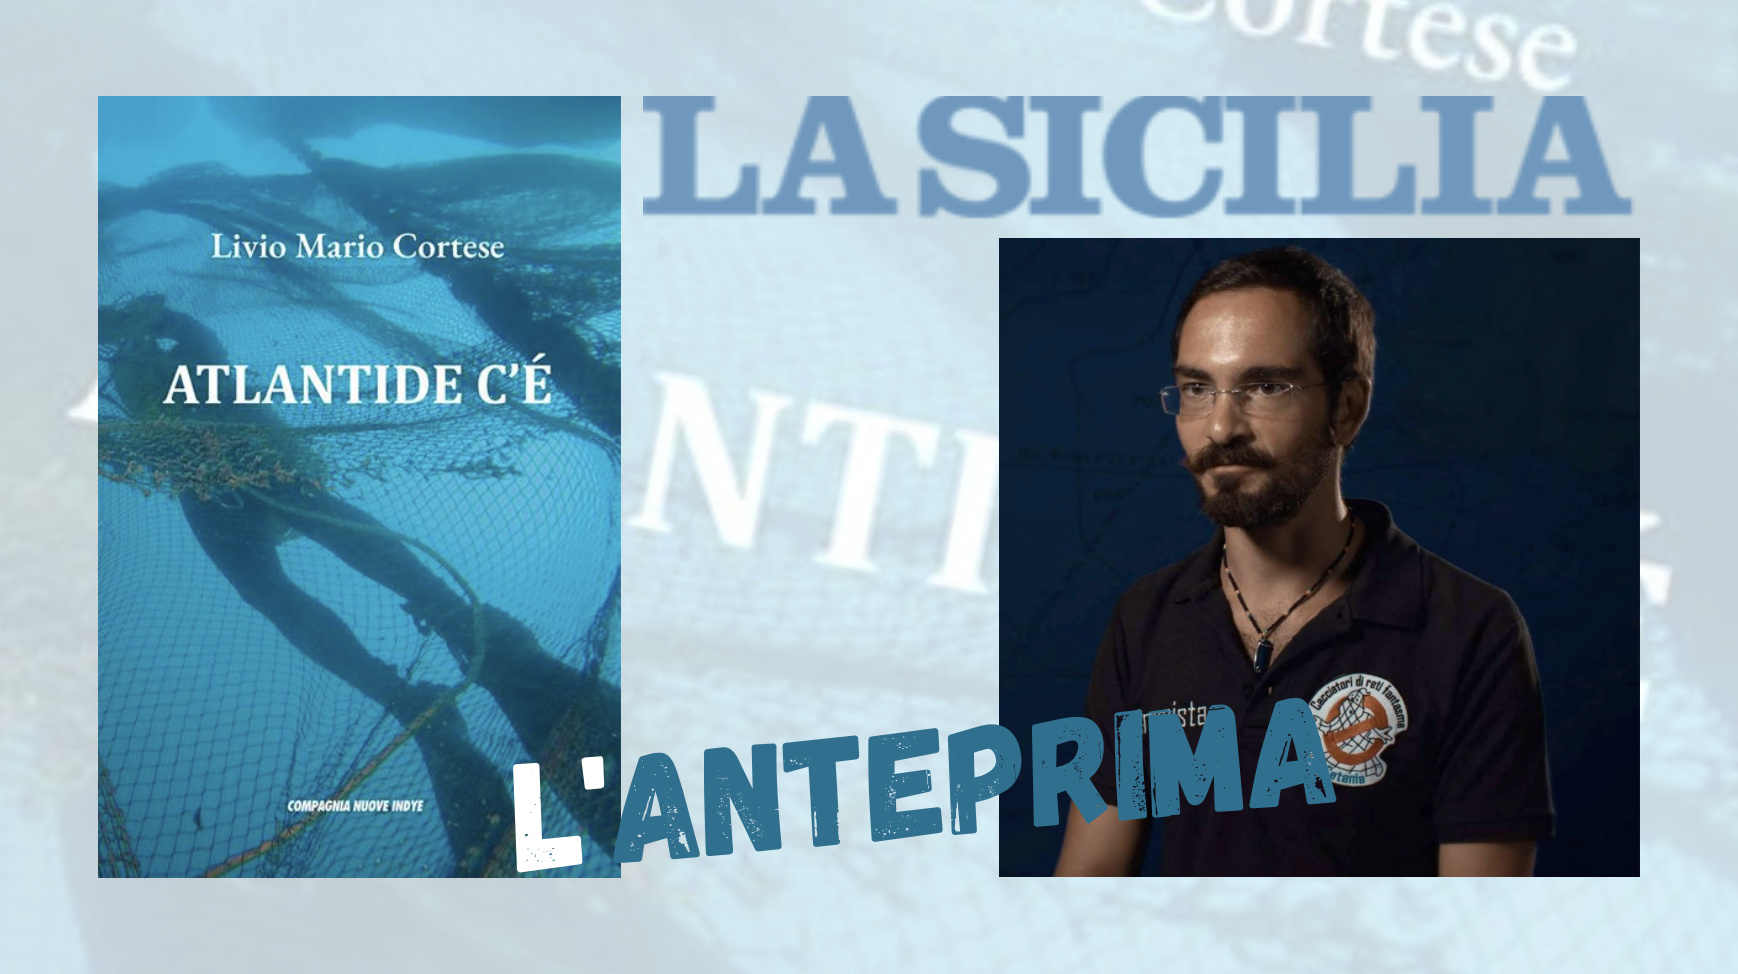 SMF per La Sicilia – Atlantide c’è… e lotta con noi – Recensione al nuovo volume di Livio Mario Cortese